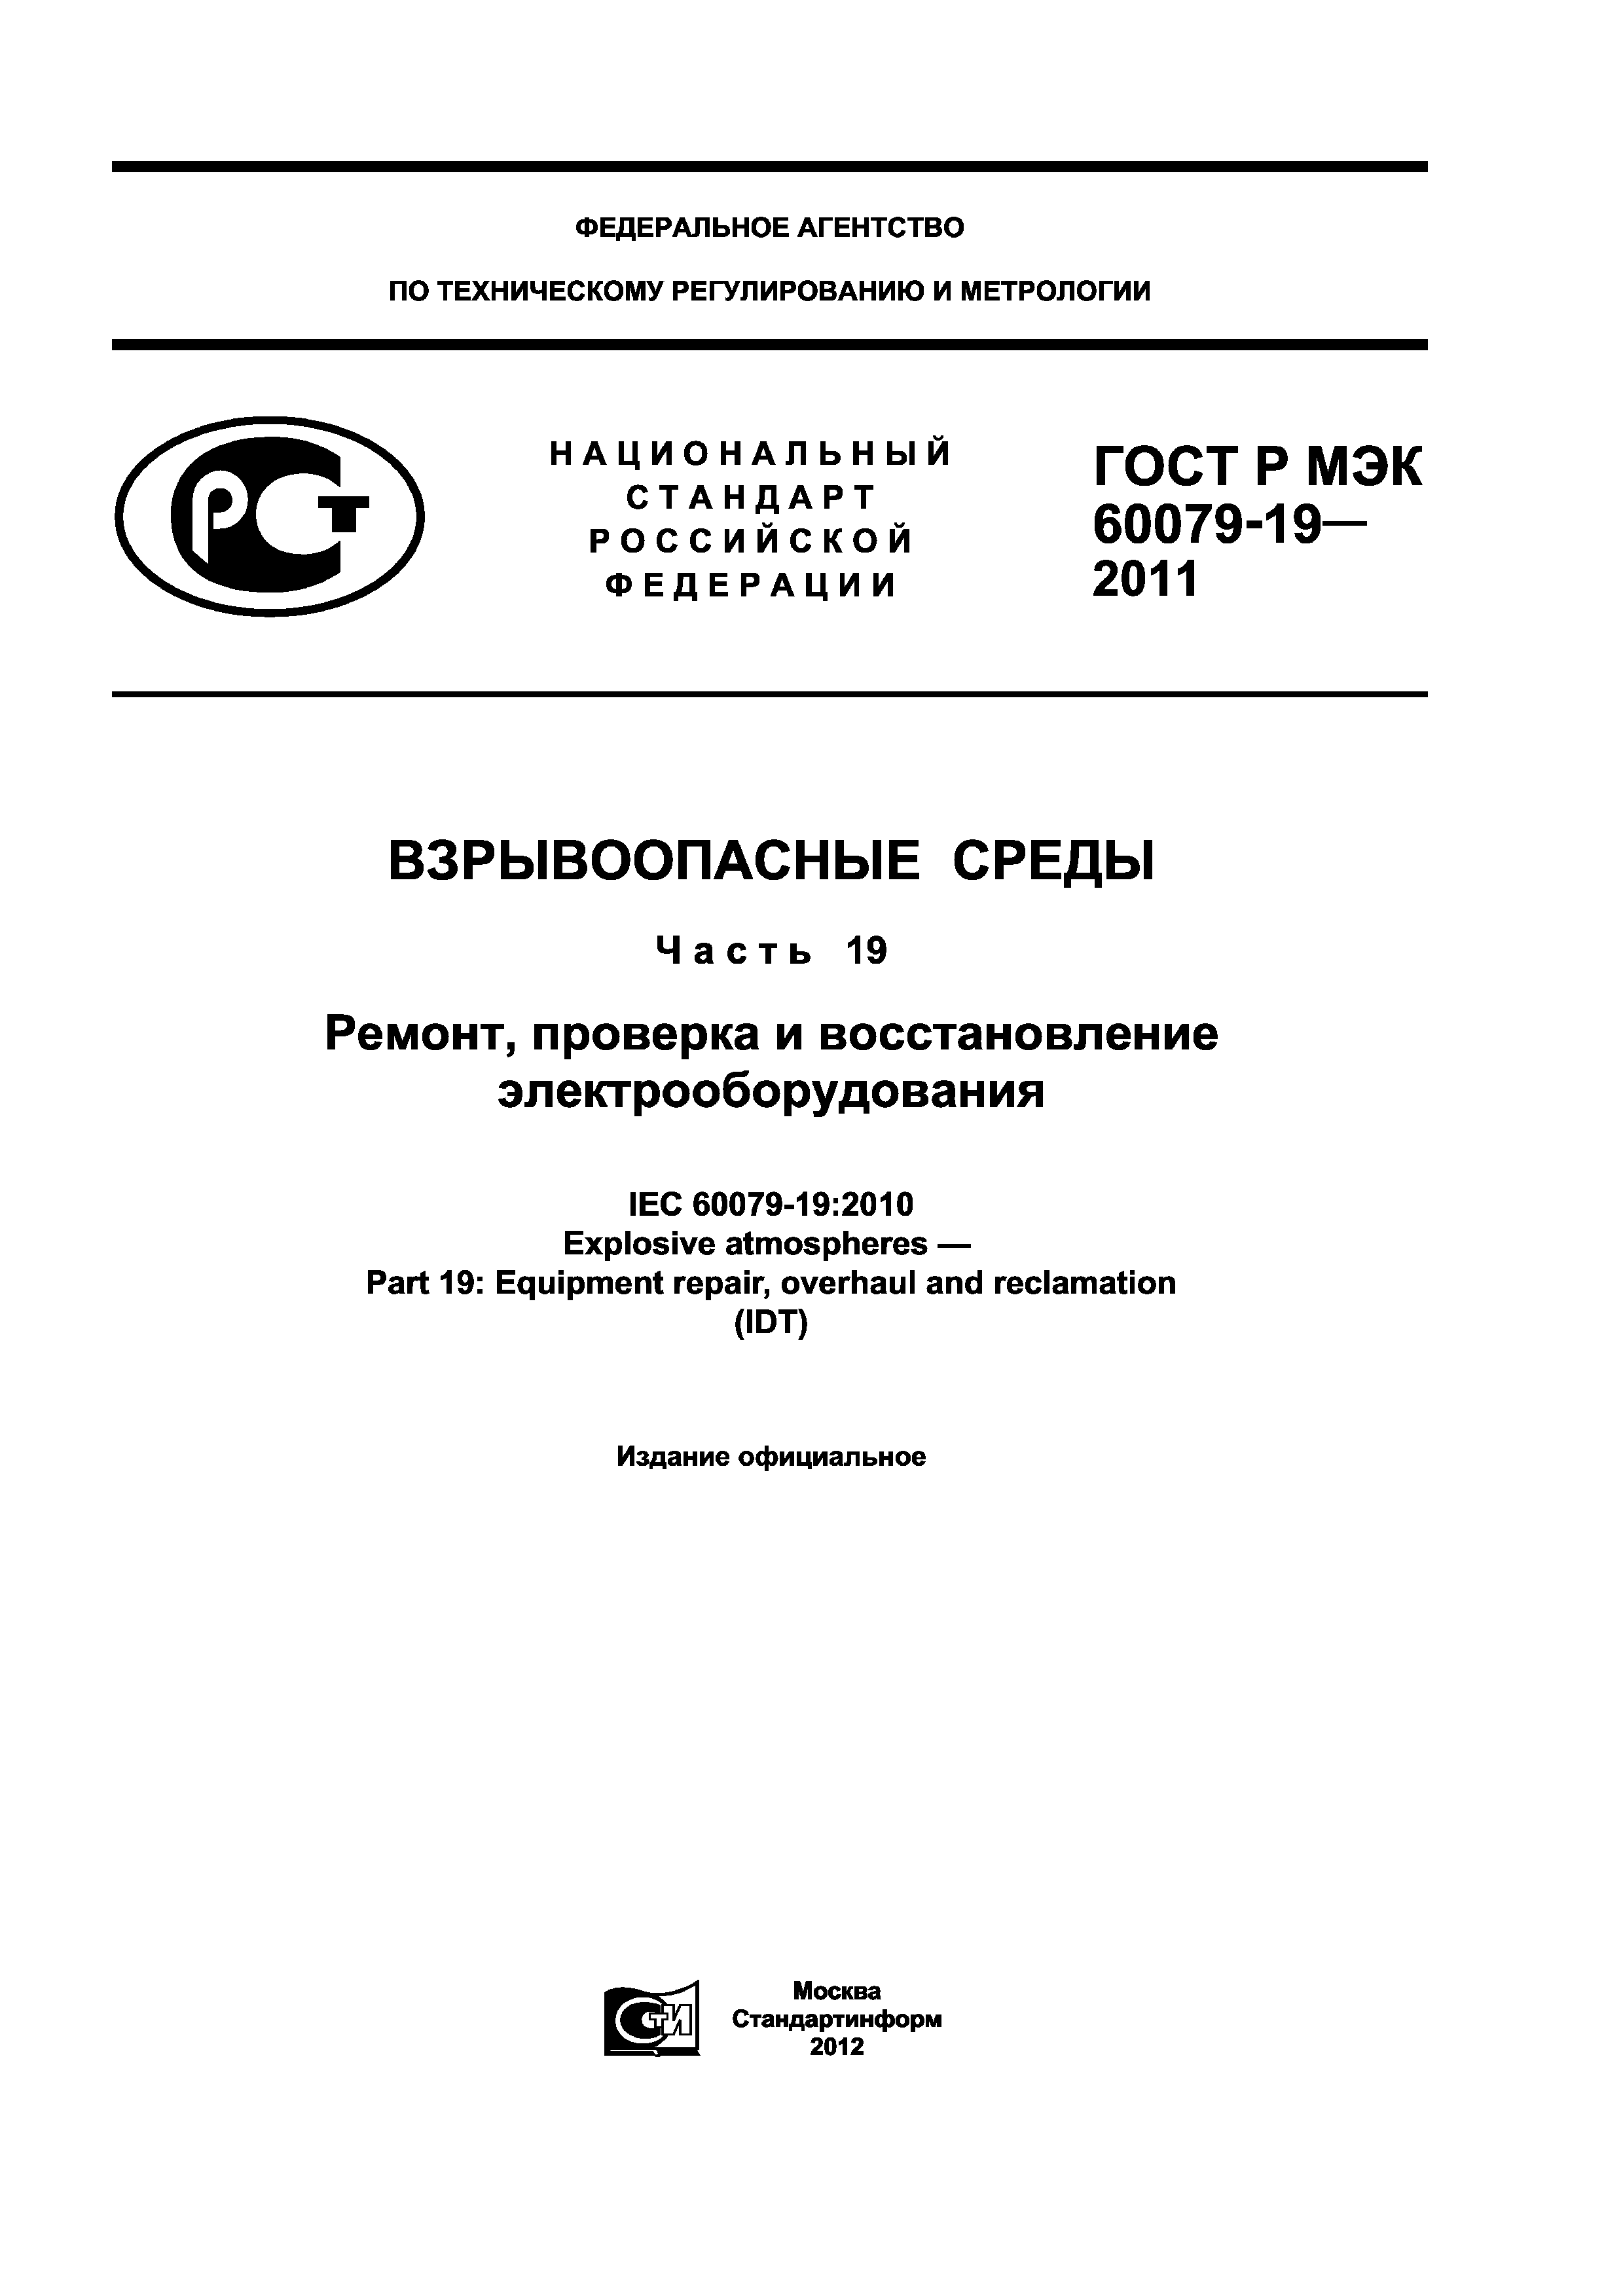 ГОСТ Р МЭК 60079-19-2011